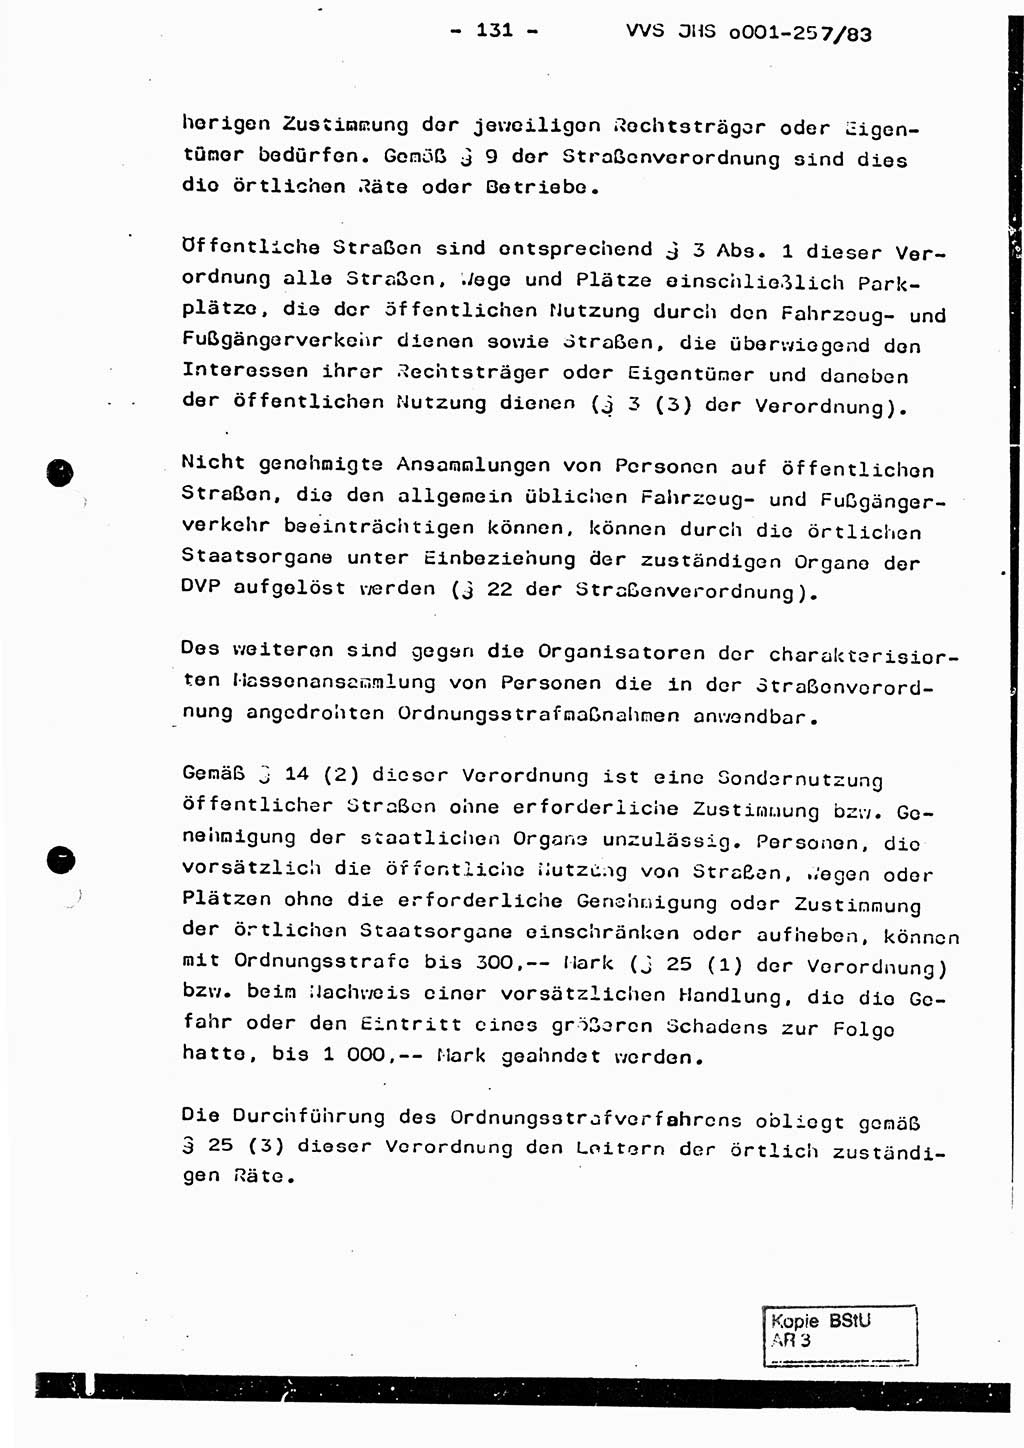 Dissertation, Oberst Helmut Lubas (BV Mdg.), Oberstleutnant Manfred Eschberger (HA IX), Oberleutnant Hans-Jürgen Ludwig (JHS), Ministerium für Staatssicherheit (MfS) [Deutsche Demokratische Republik (DDR)], Juristische Hochschule (JHS), Vertrauliche Verschlußsache (VVS) o001-257/83, Potsdam 1983, Seite 131 (Diss. MfS DDR JHS VVS o001-257/83 1983, S. 131)